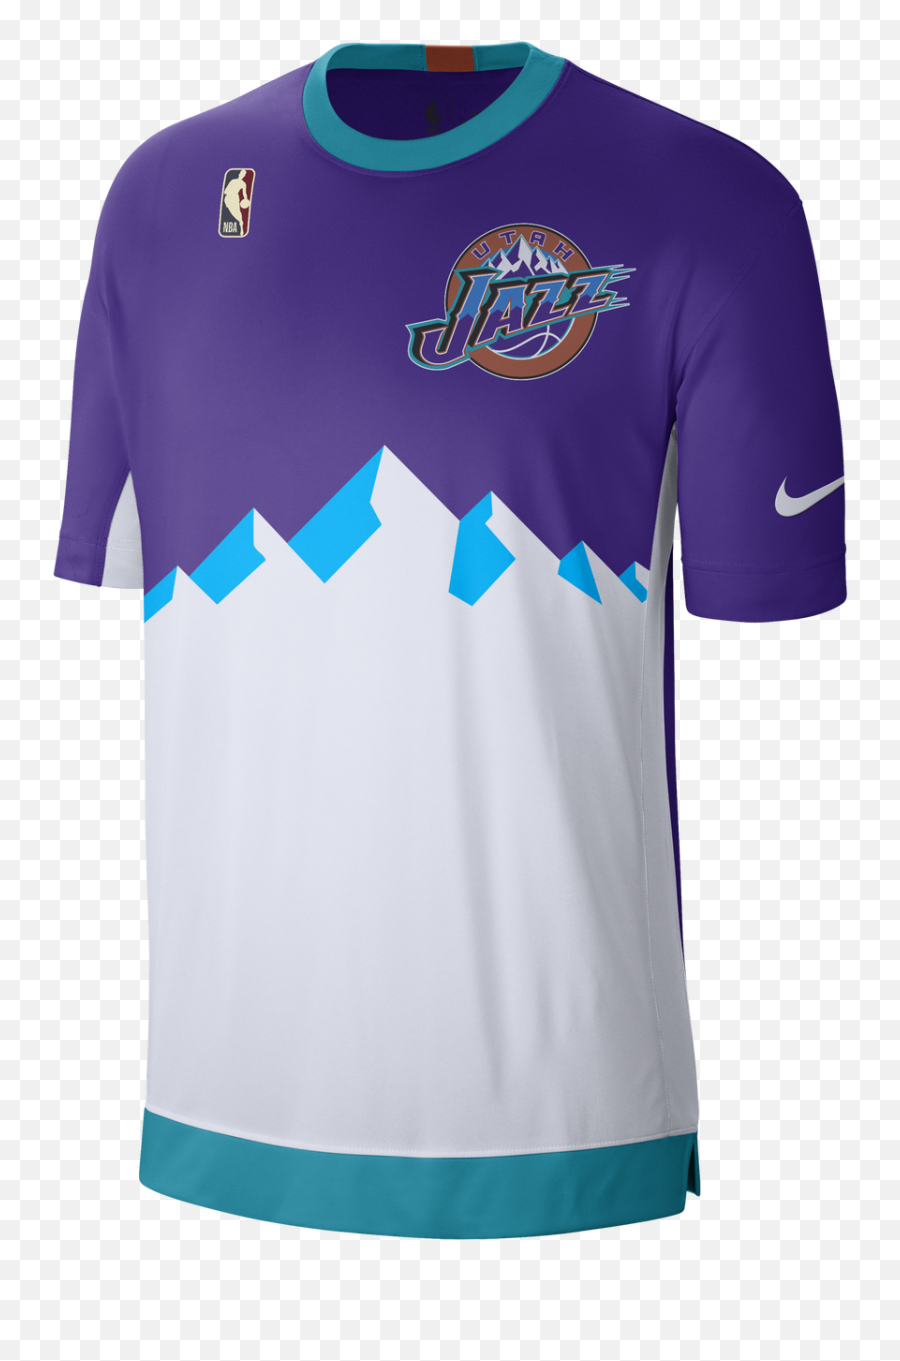 Utah Jazz 90s Jersey - Utah Jazz Shirt Hardwood Classic Emoji,Utah Jazz Logo Png